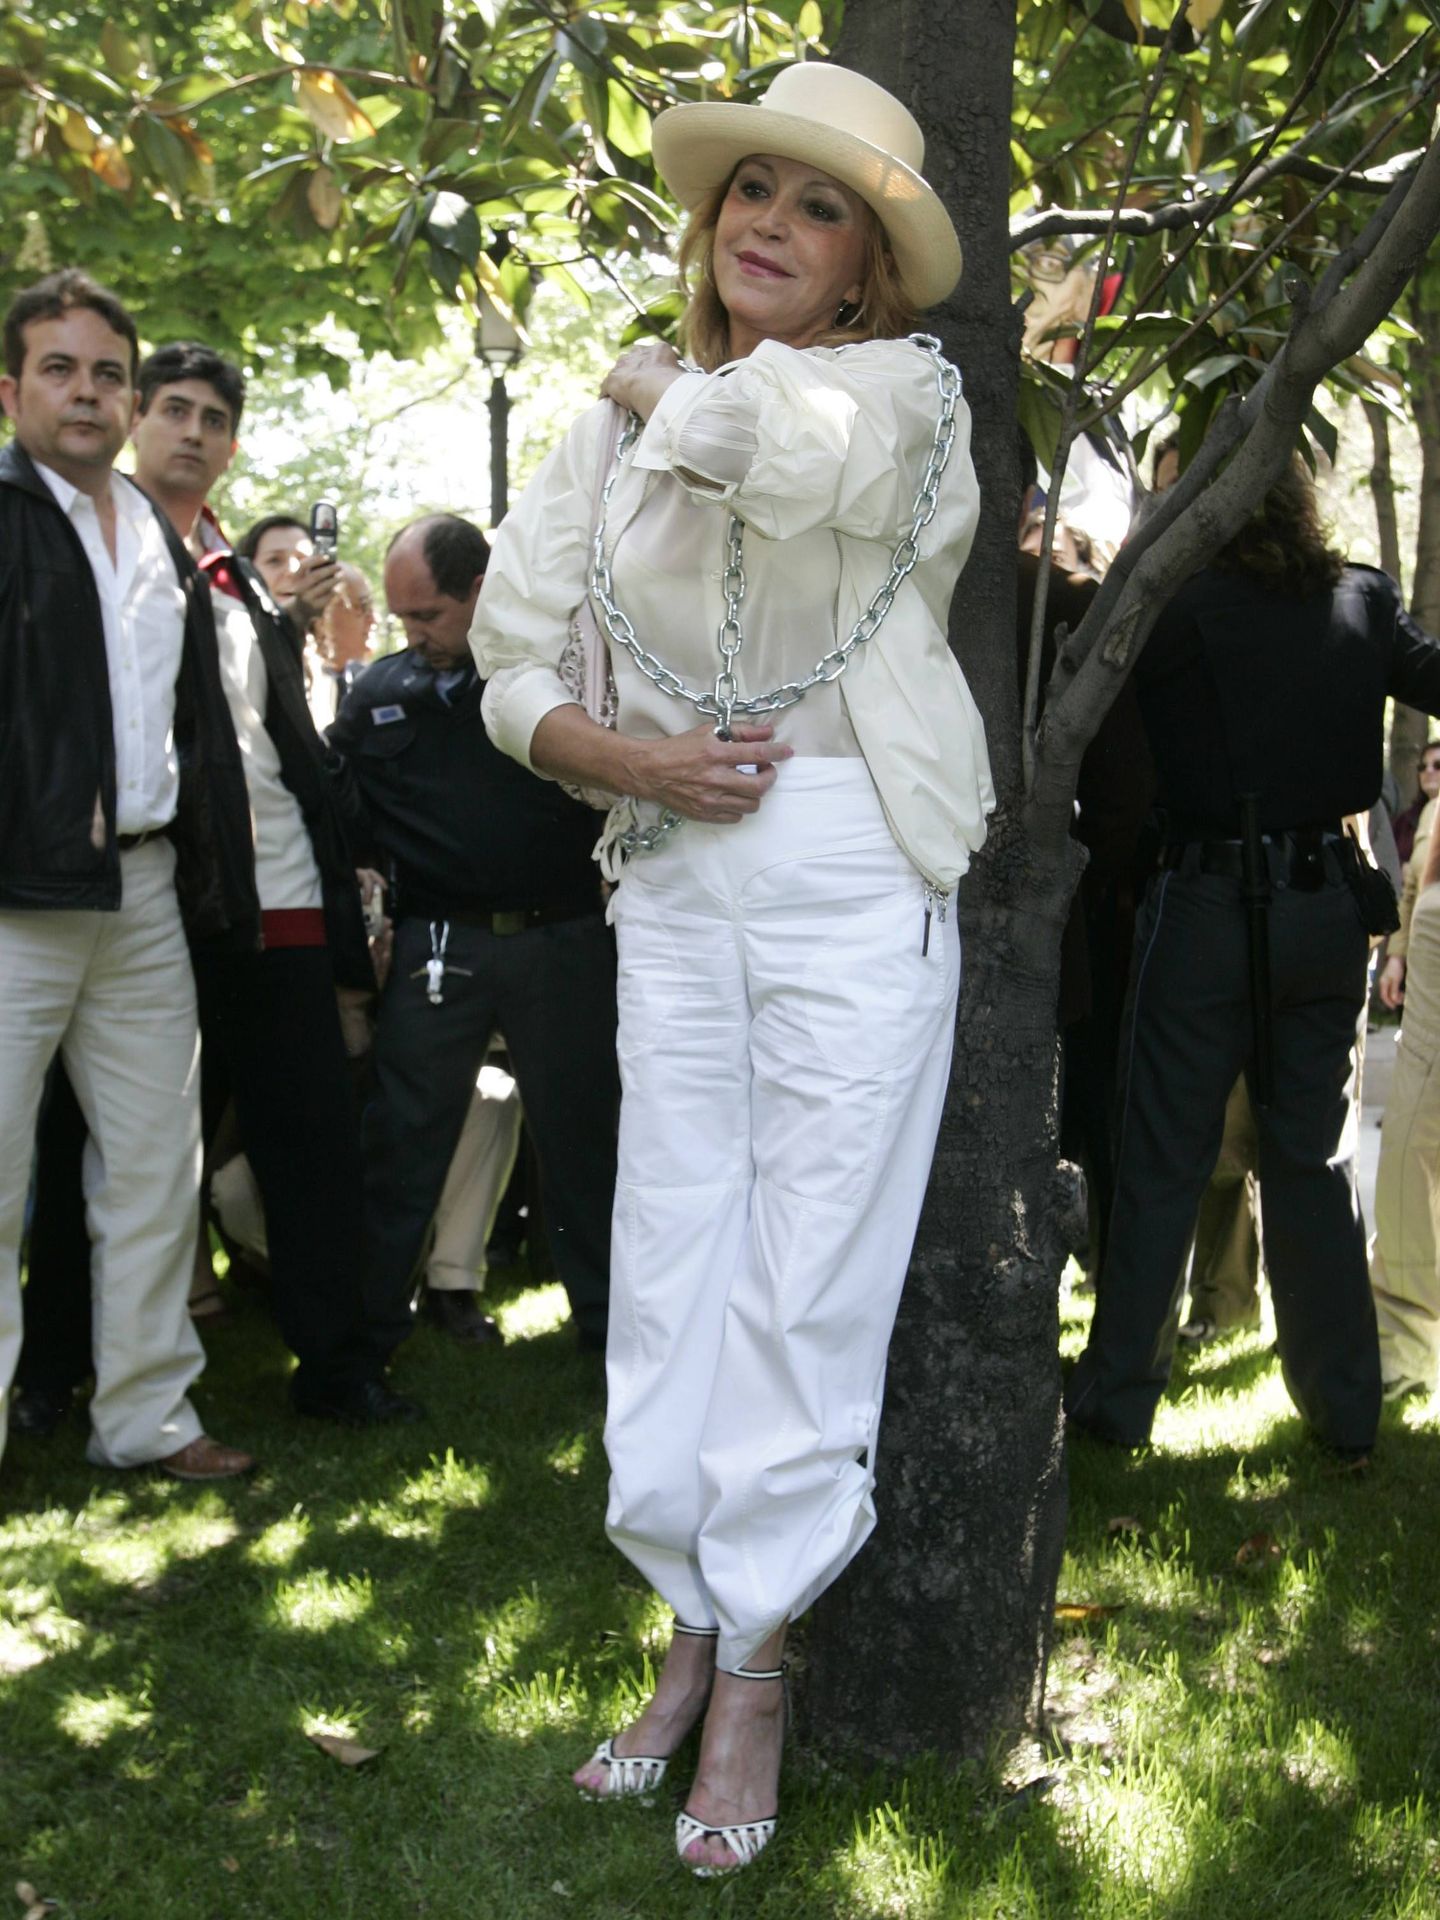 La baronesa se manifiesta encadenándose  contra la tala de árboles del Paseo del Prado, 6 de mayo de 2007 (Archivo ABC/ Chema Barroso)